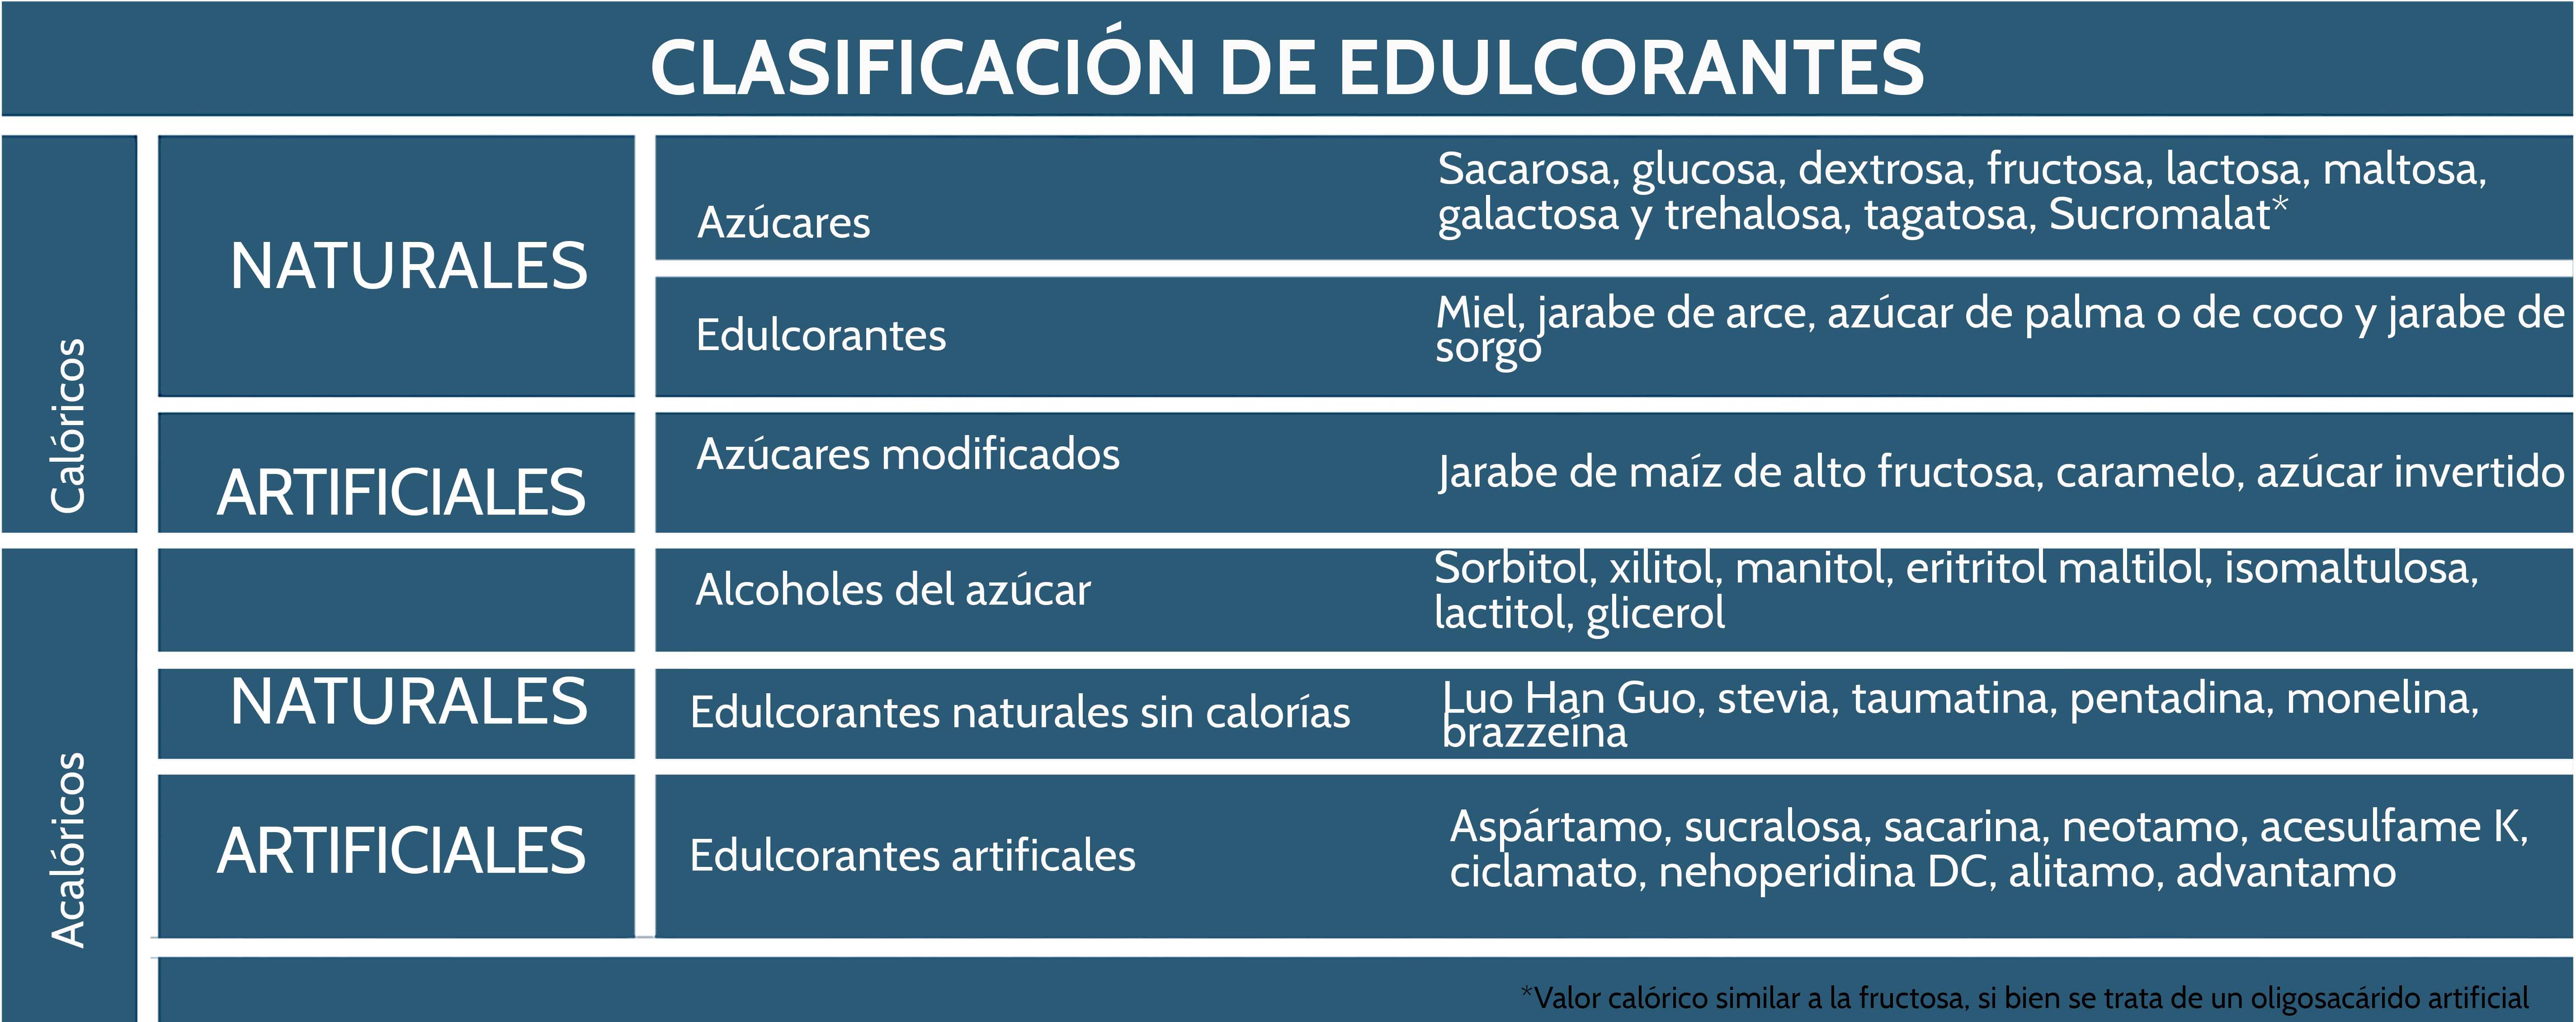 Tabla clasificación edulcorantes